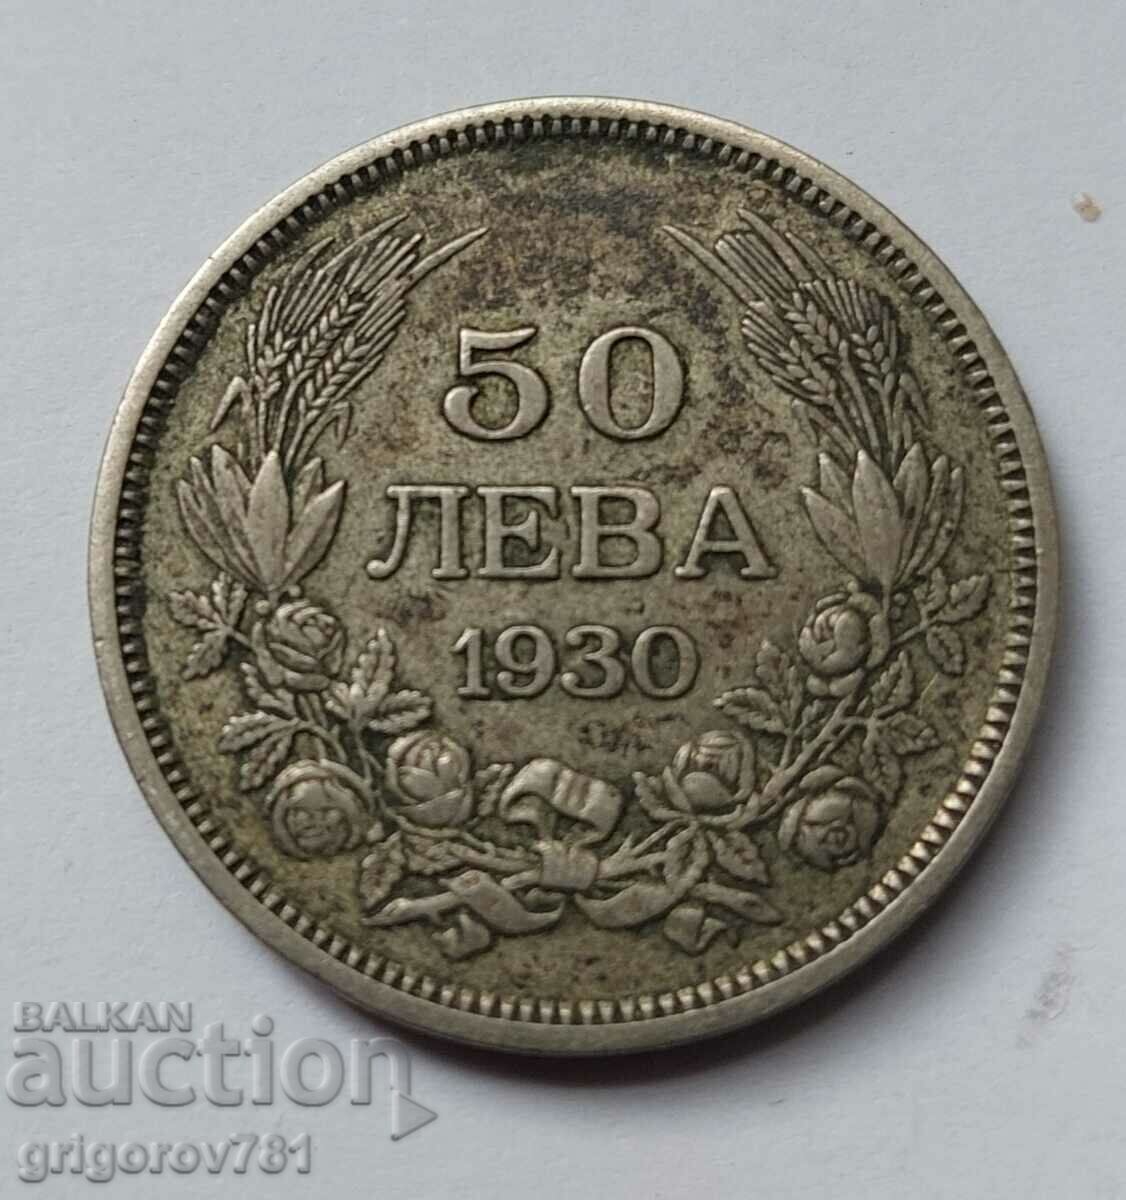 Ασήμι 50 λέβα Βουλγαρία 1930 - ασημένιο νόμισμα #81